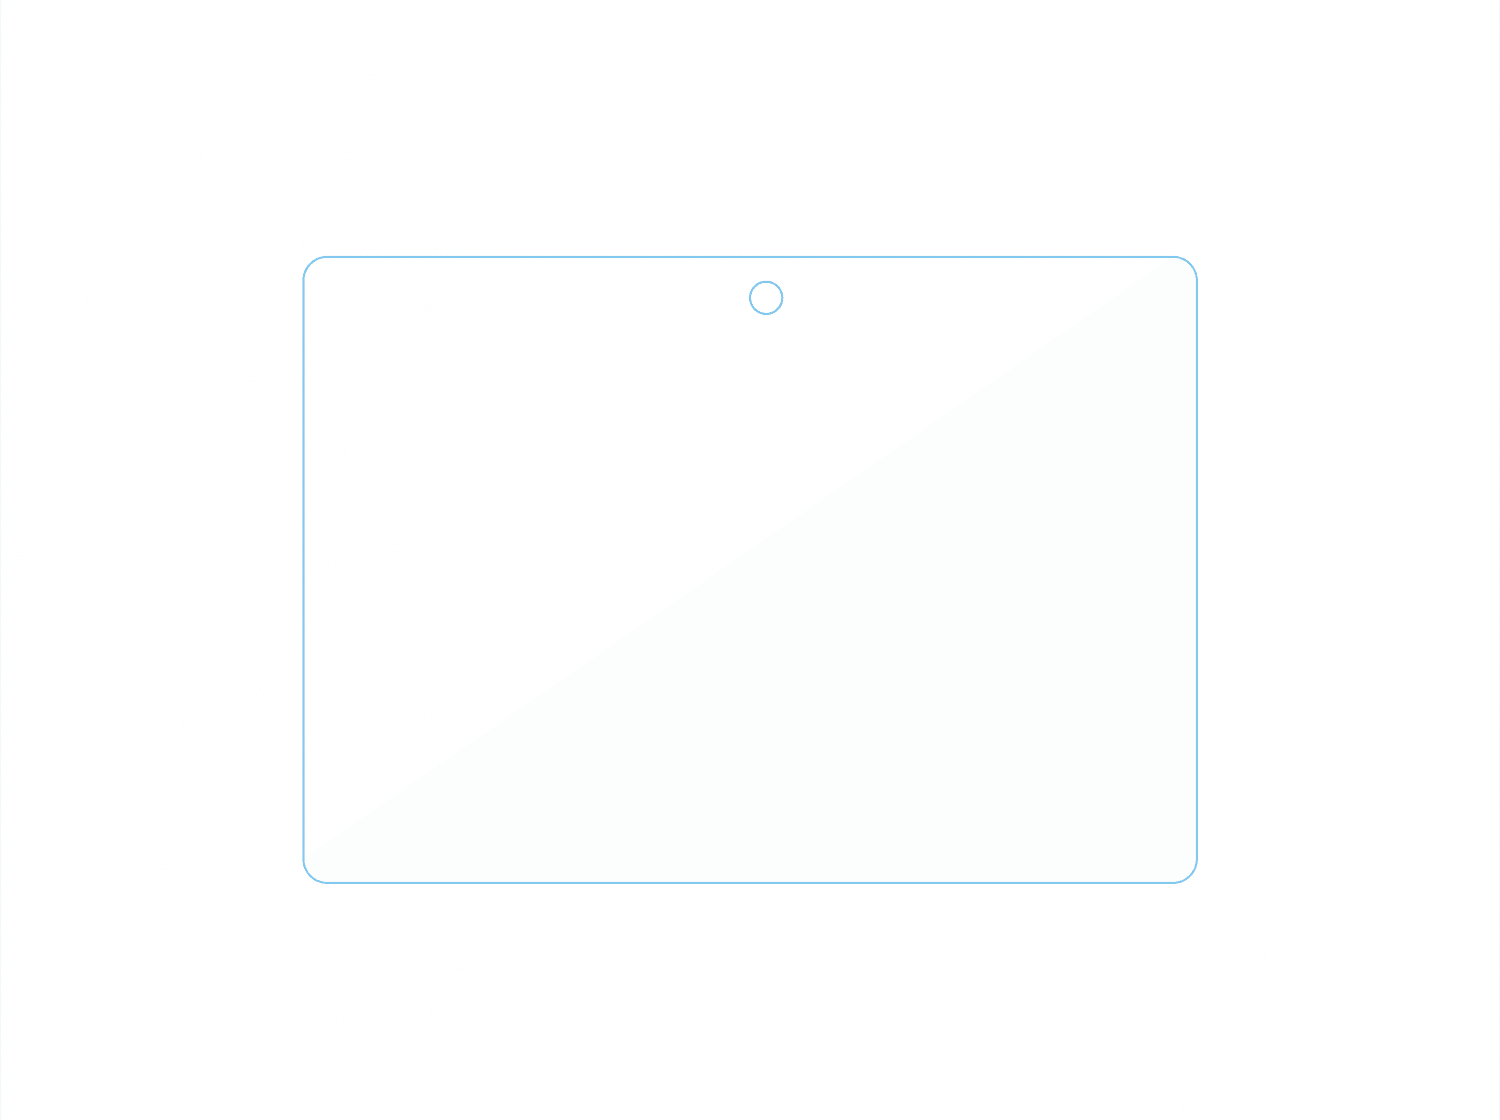 لاصقة شاشة حماية ماك بوك 14 برو شفافة جرين Green Tempered Glass Screen Protector for Macbook 14 Pro 2021 - cG9zdDoxMzcwNDc3